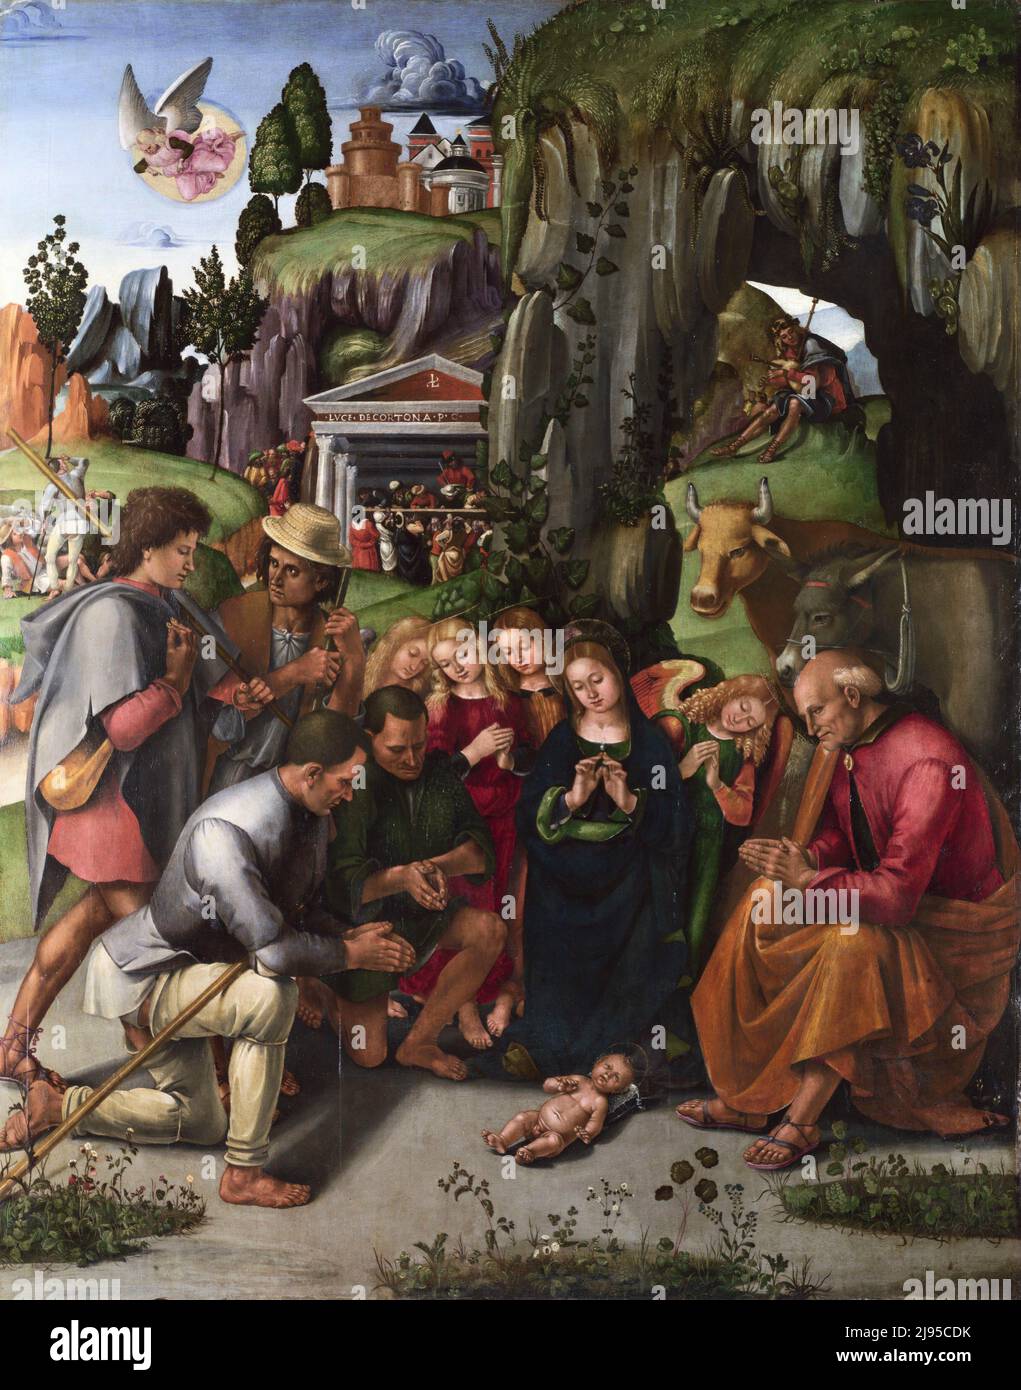 Luca Signorelli. Pintura titulada 'La Adoración de los Pastores' del pintor renacentista italiano Luca Signorelli (c. 1441/1445-1523), aceite sobre madera, c. 1496 Foto de stock